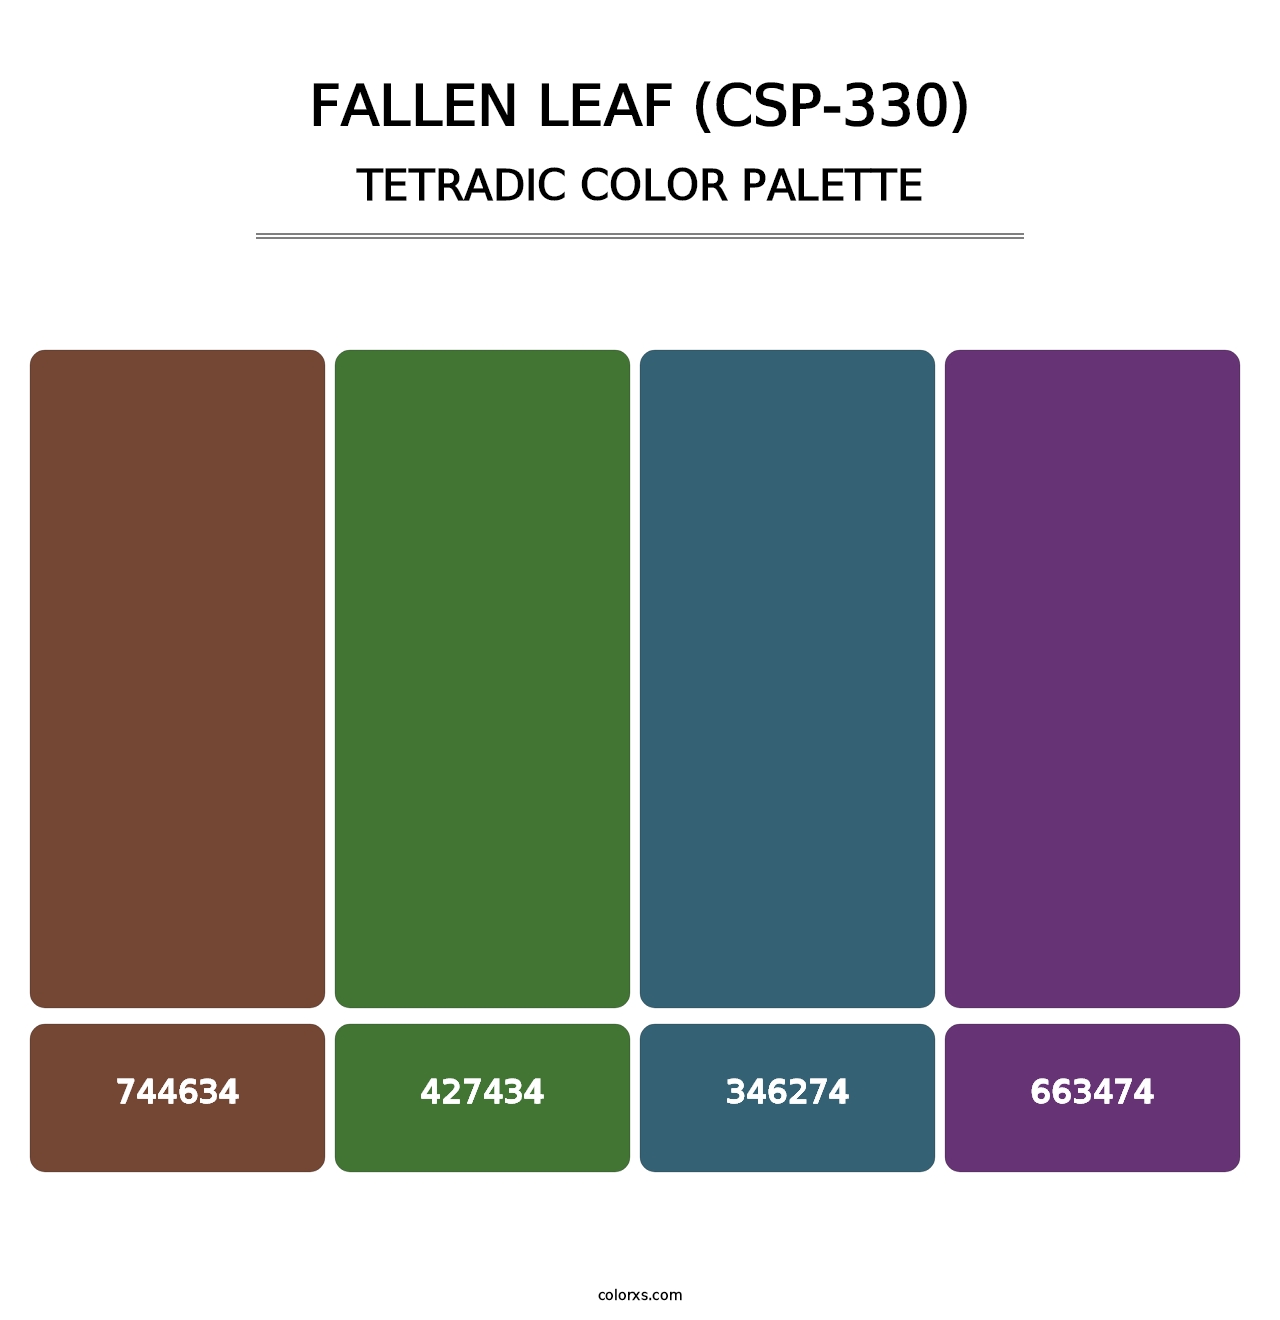 Fallen Leaf (CSP-330) - Tetradic Color Palette